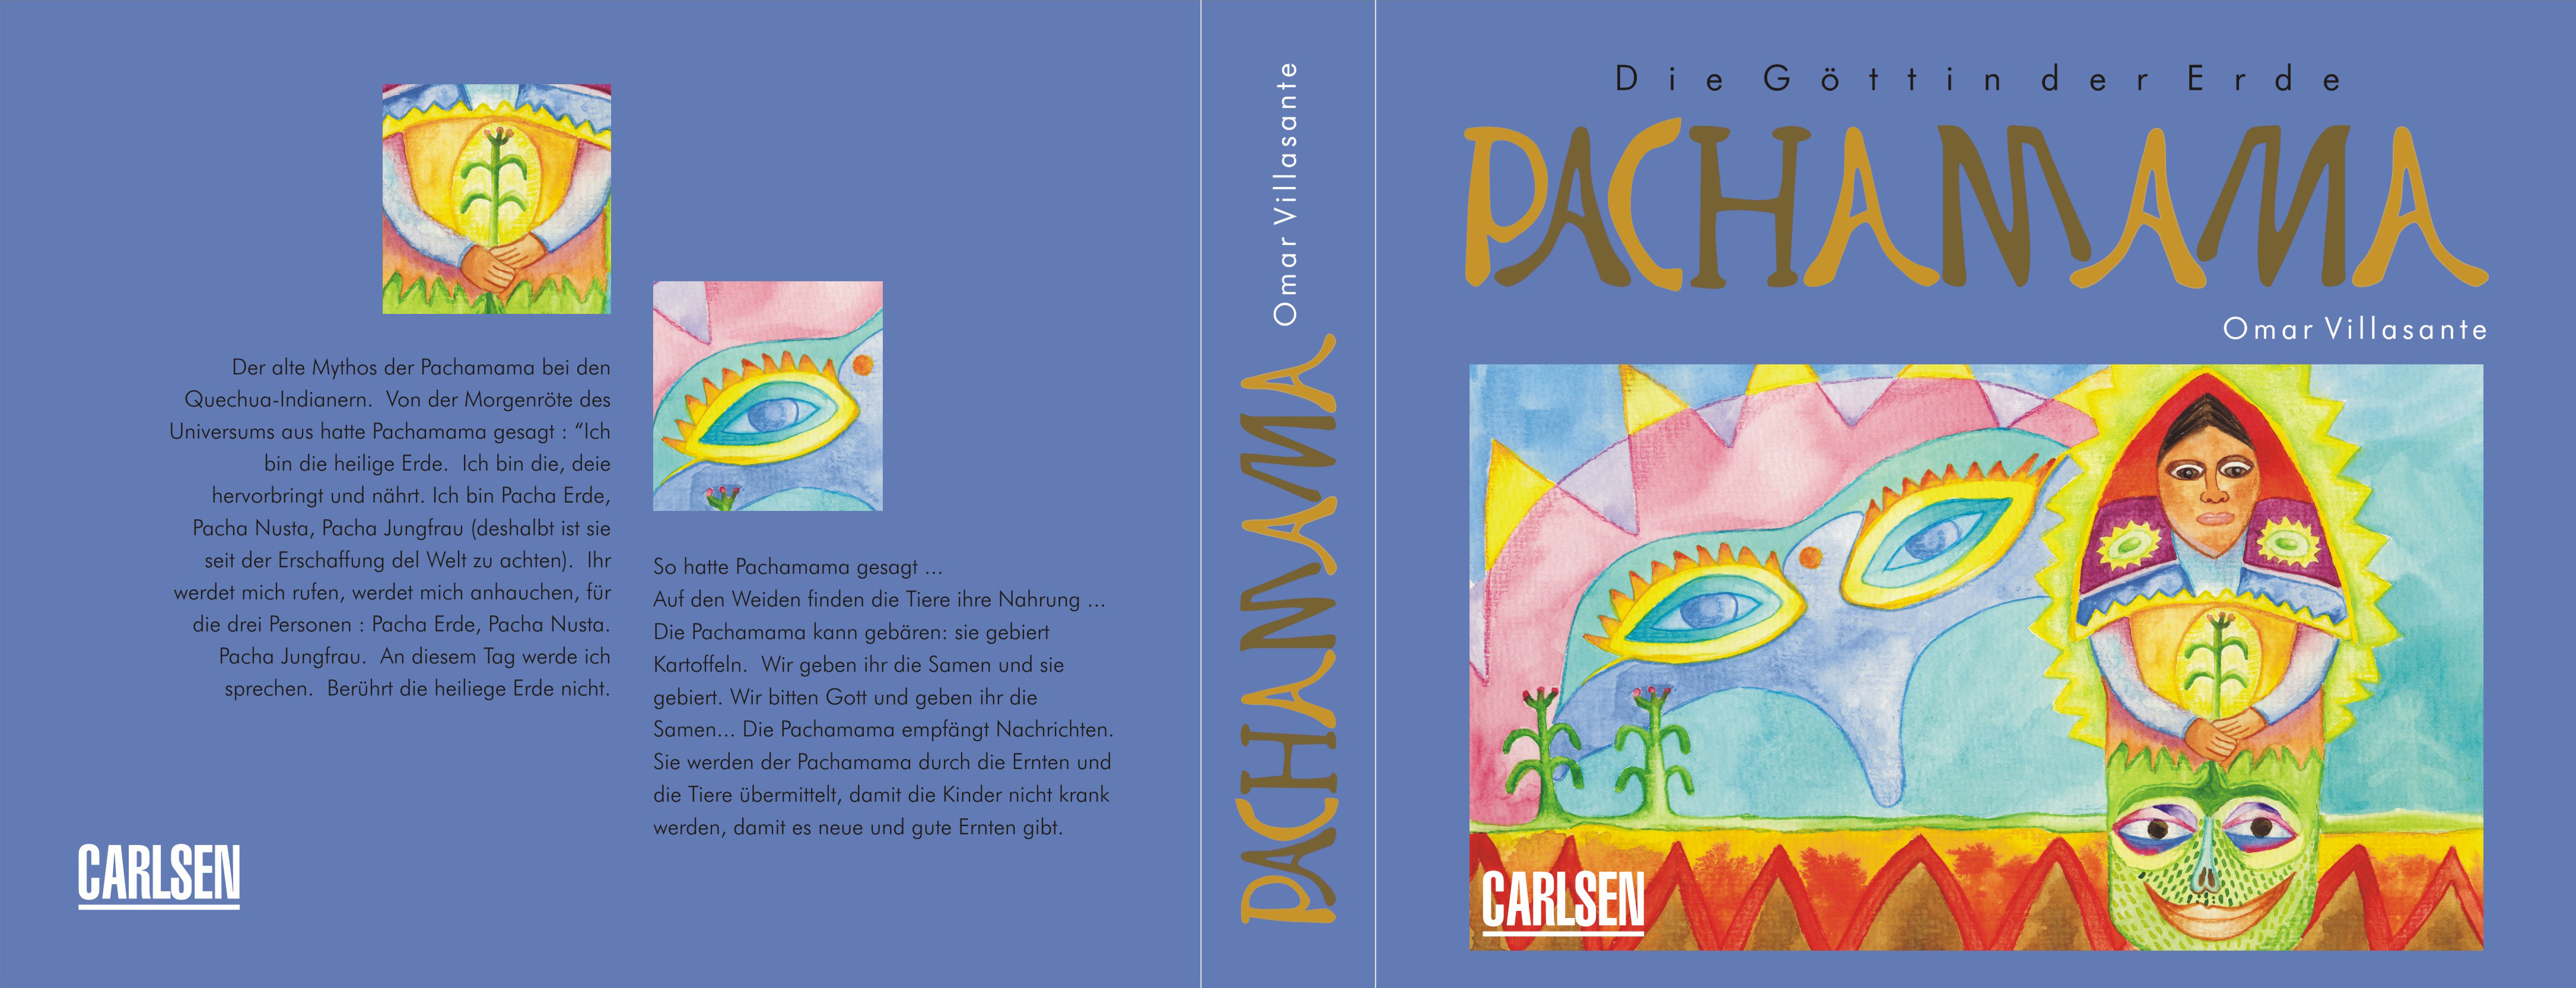 Buchumschlag "Die Göttin der Erde Pachamama"